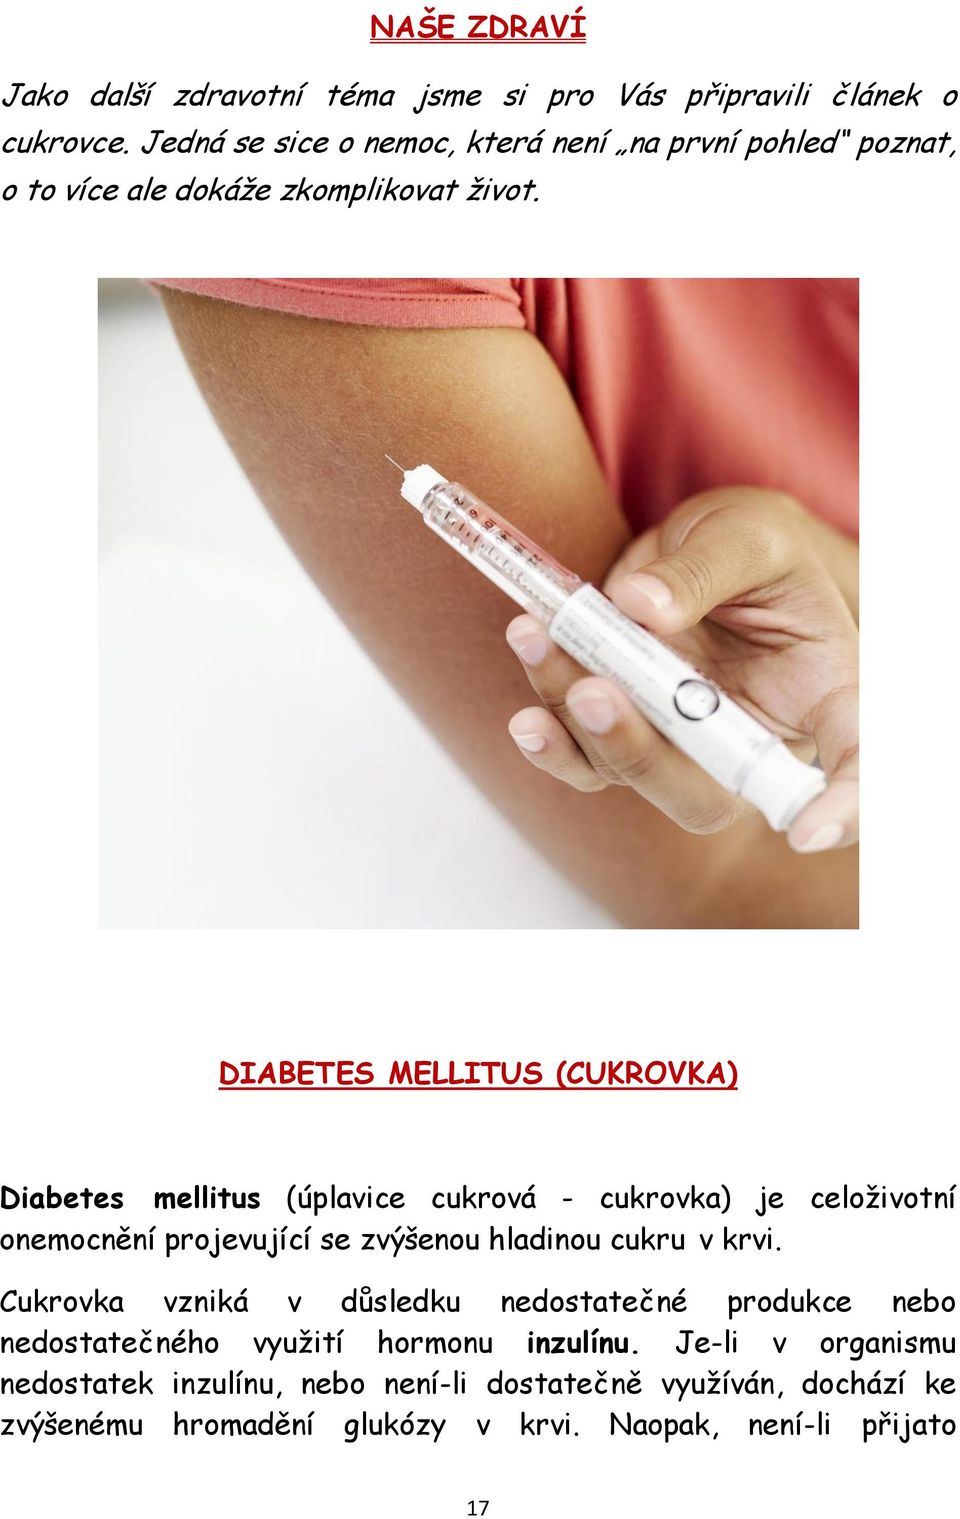 DIABETES MELLITUS (CUKROVKA) Diabetes mellitus (úplavice cukrová - cukrovka) je celoživotní onemocnění projevující se zvýšenou hladinou cukru v